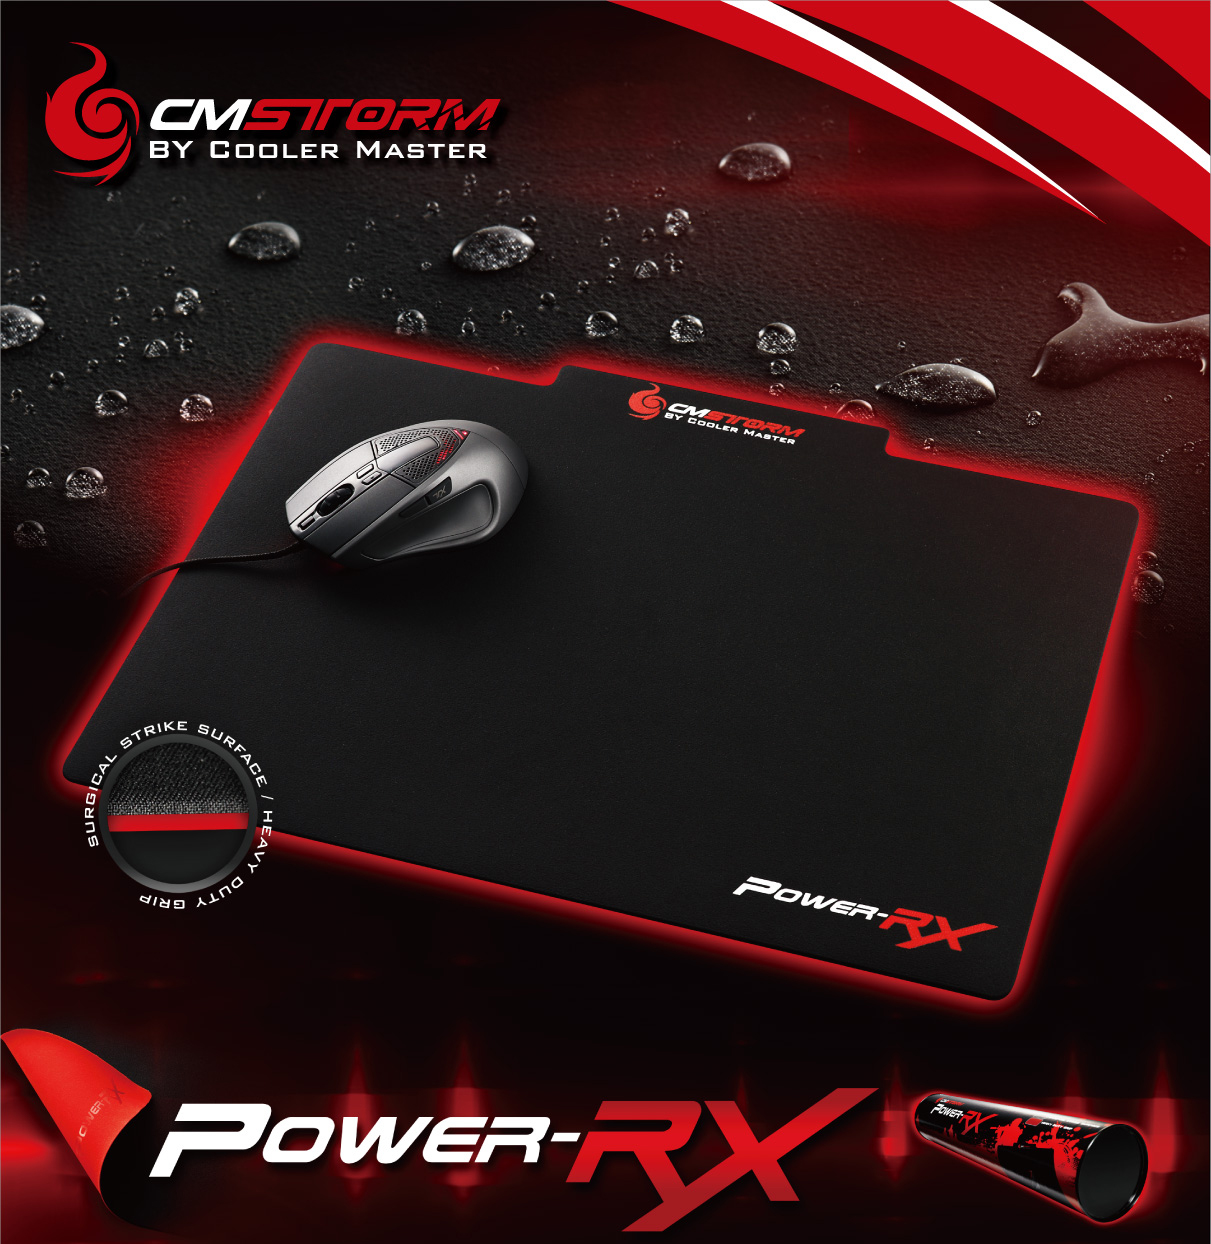 Tapis de souris CM Storm POWER-RX par Cooler Master